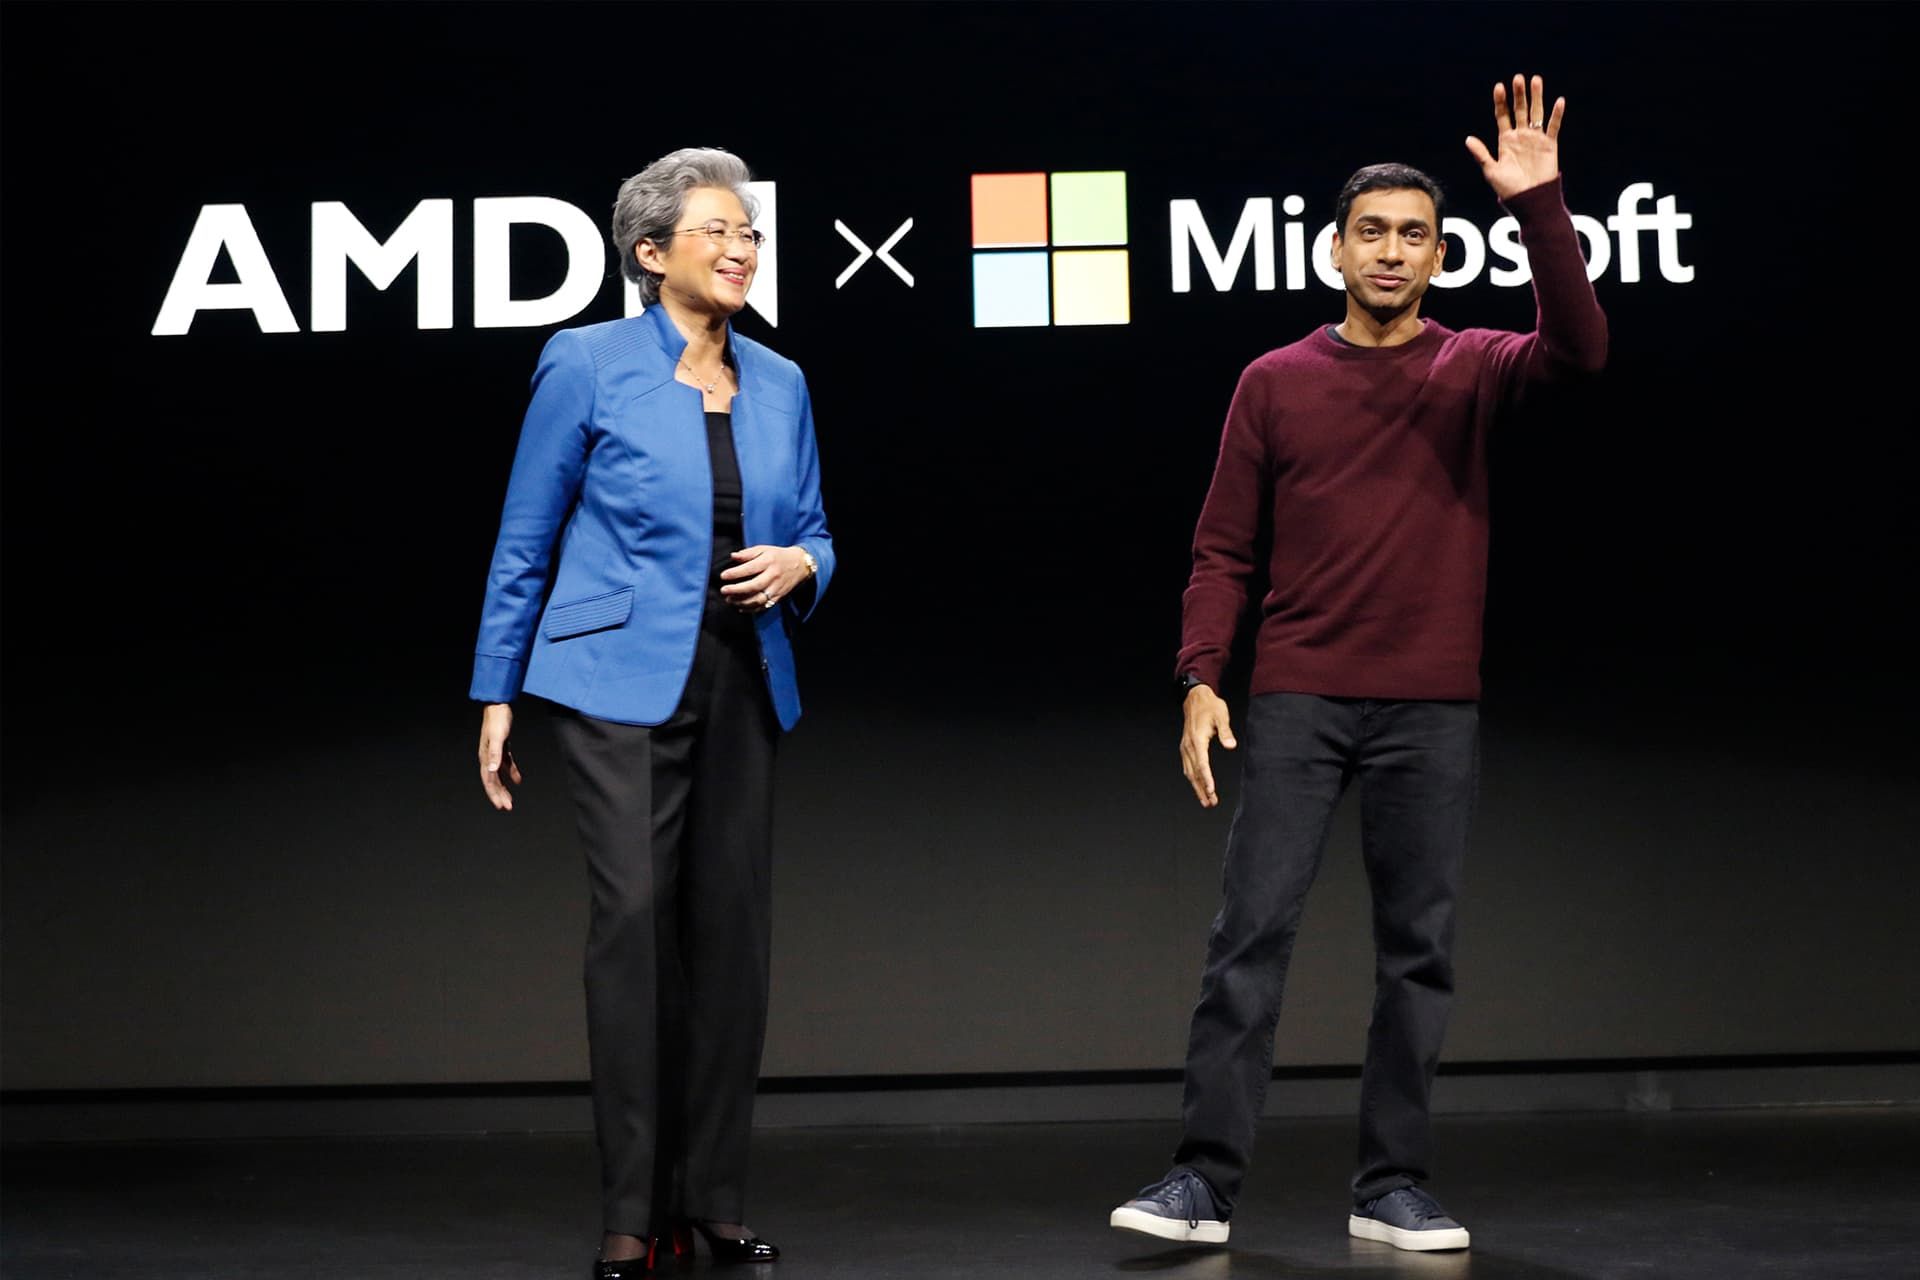 پاوان داوولوری رئیس تیم ویندوز و سرفیس در کنار مدیرعامل AMD